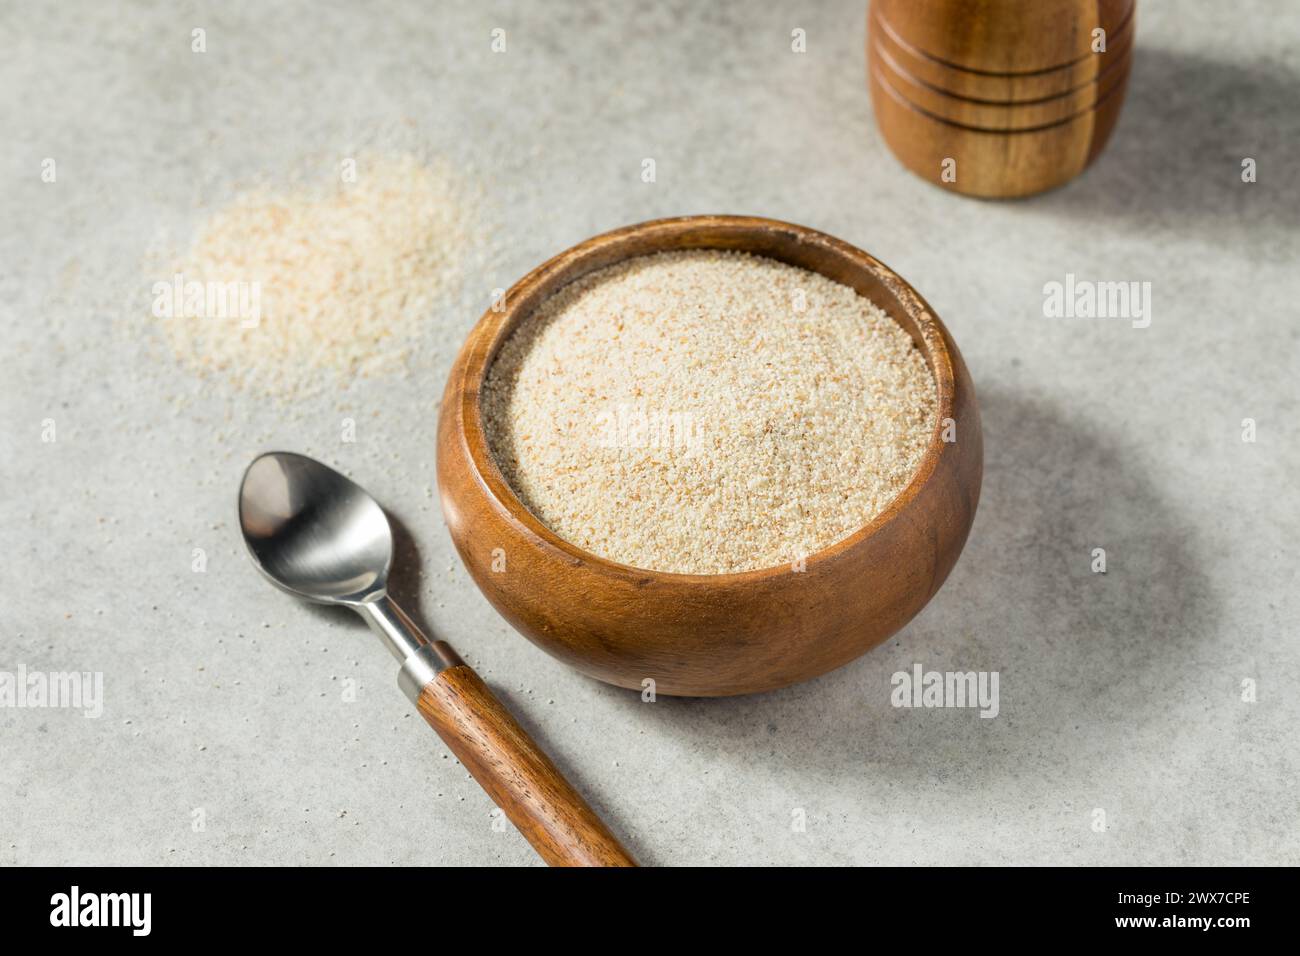 Grain de farine de blé brut biologique dans un bol Banque D'Images